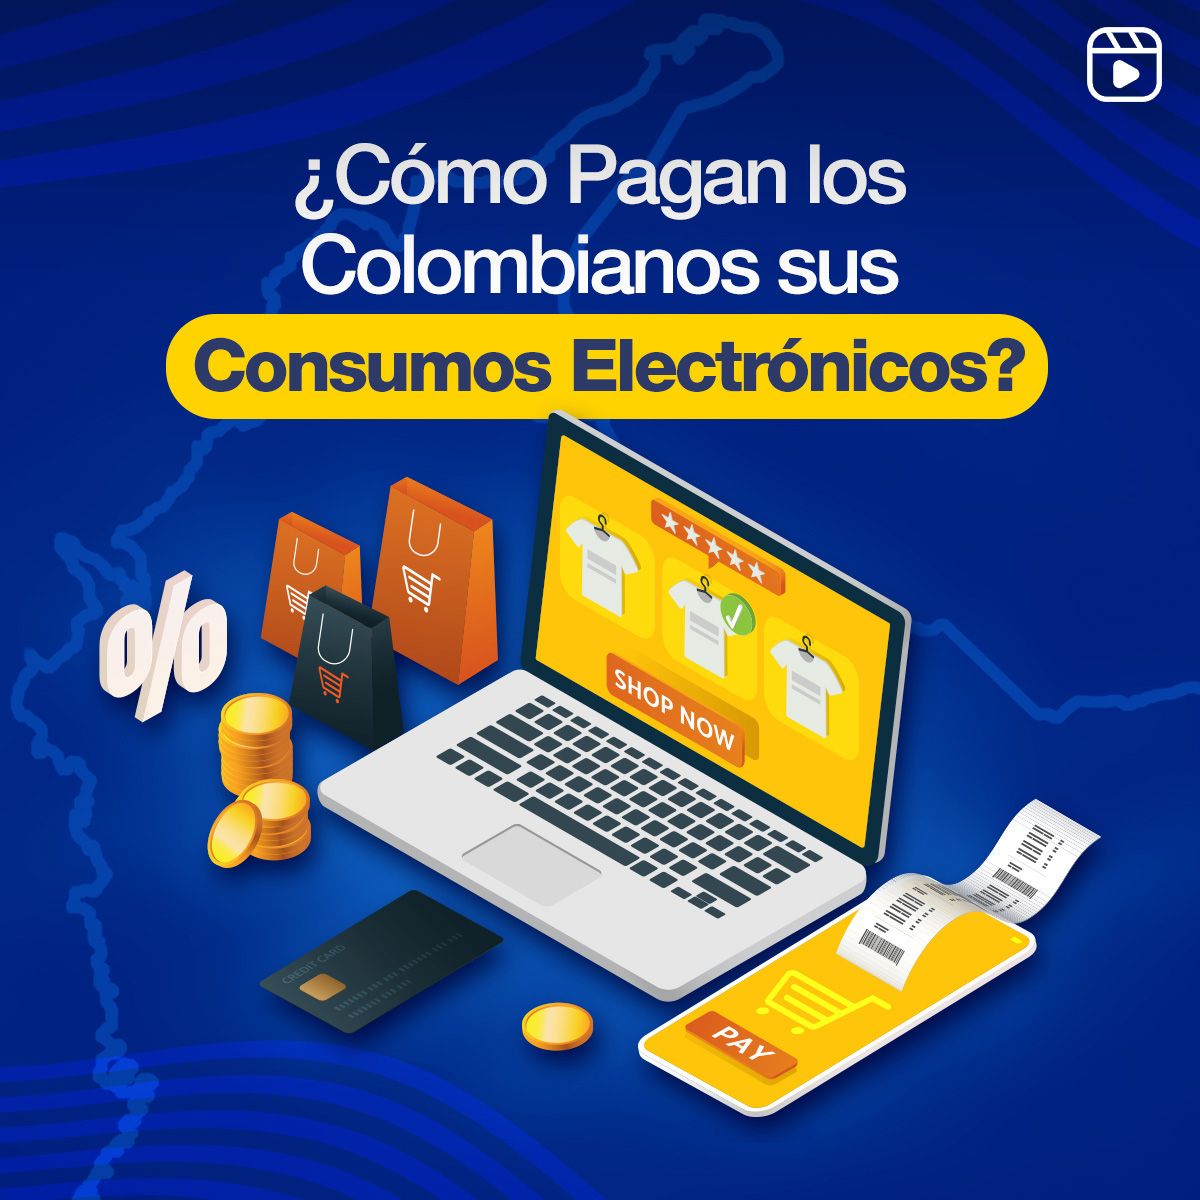 ¿Cómo Pagan los Colombianos sus Consumos Electrónicos?